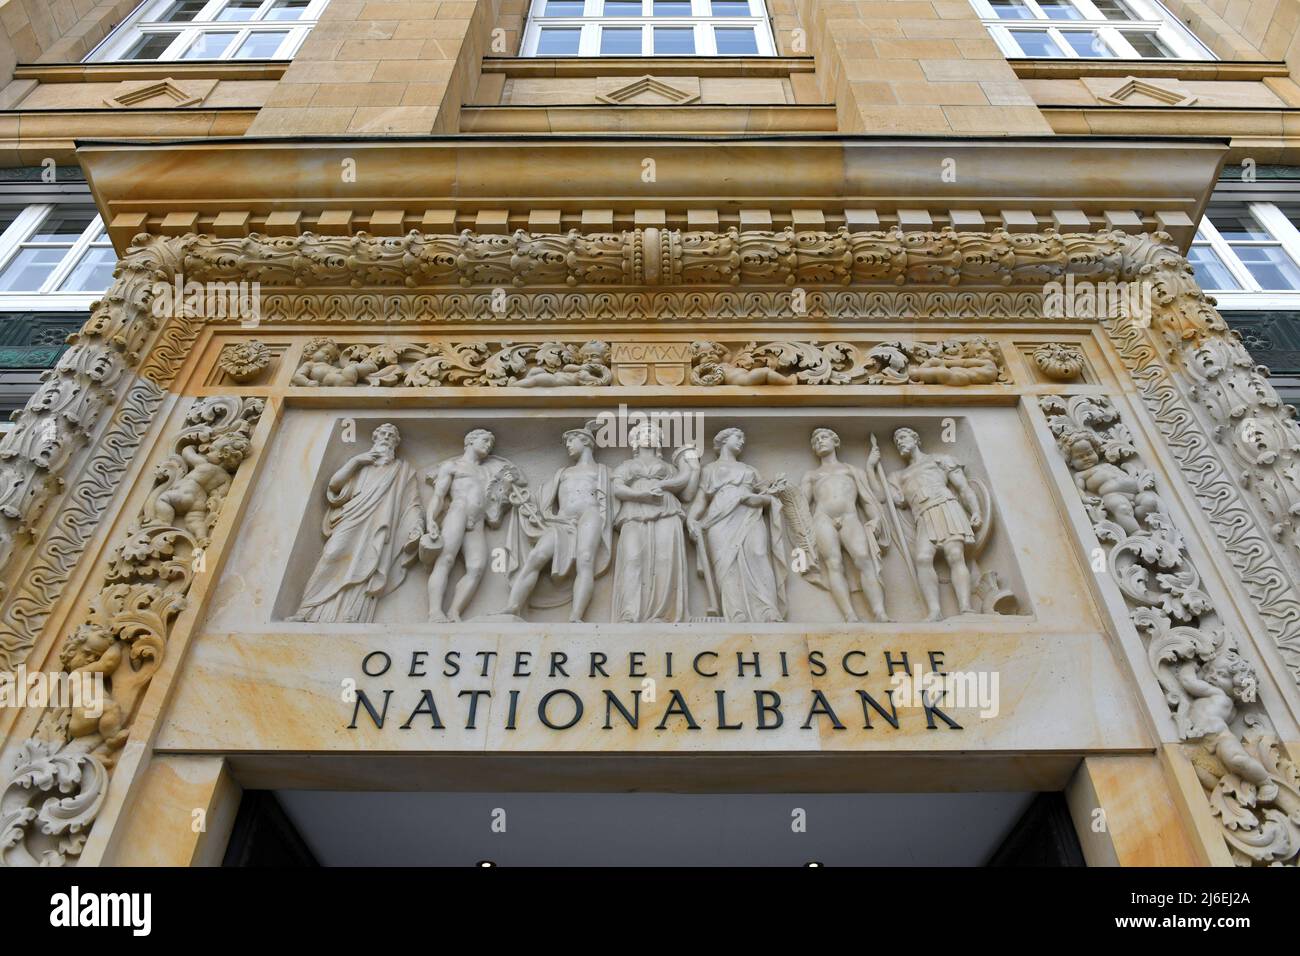 Fassade der Österreichischen Natioanlbank in Wien, Österreich, Europa - Facade of the Austrian National Bank in Vienna, Austria, Europe Stock Photo